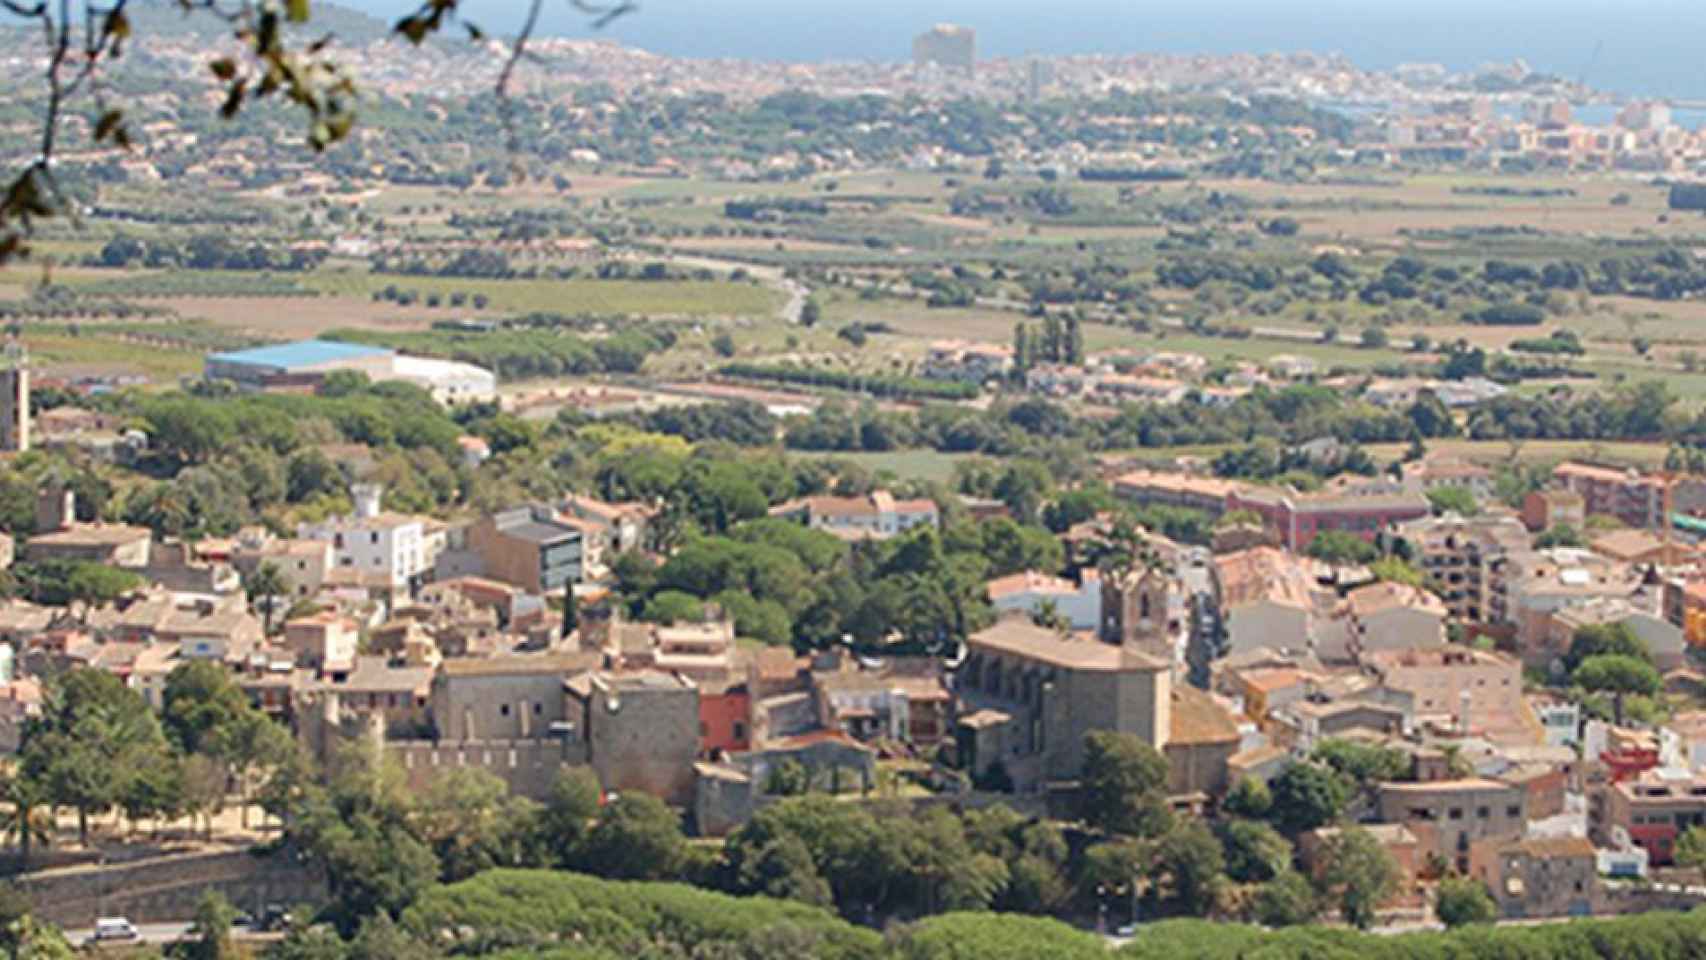 Vista general de Calonge i Sant Antoni